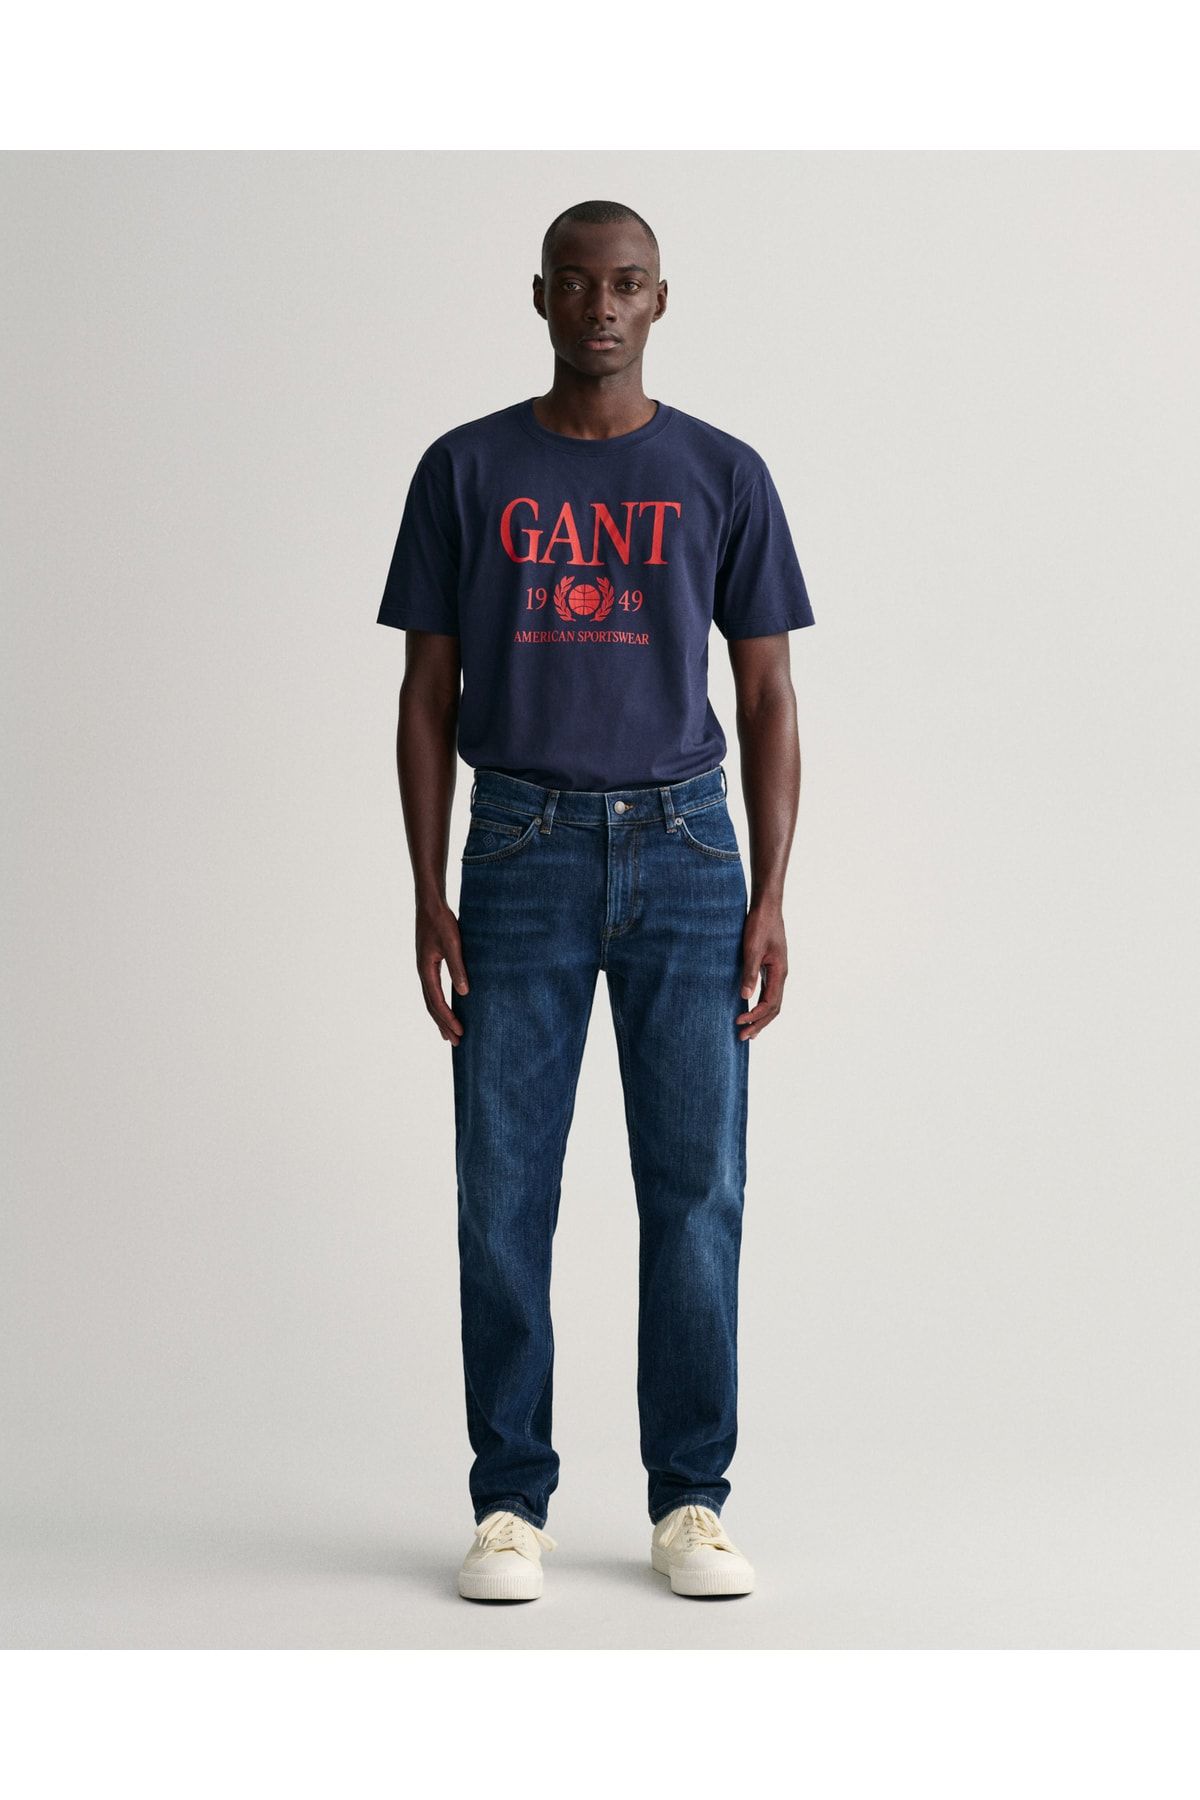 Gant شلوار جین معمولی آبی سرمه ای مردانه